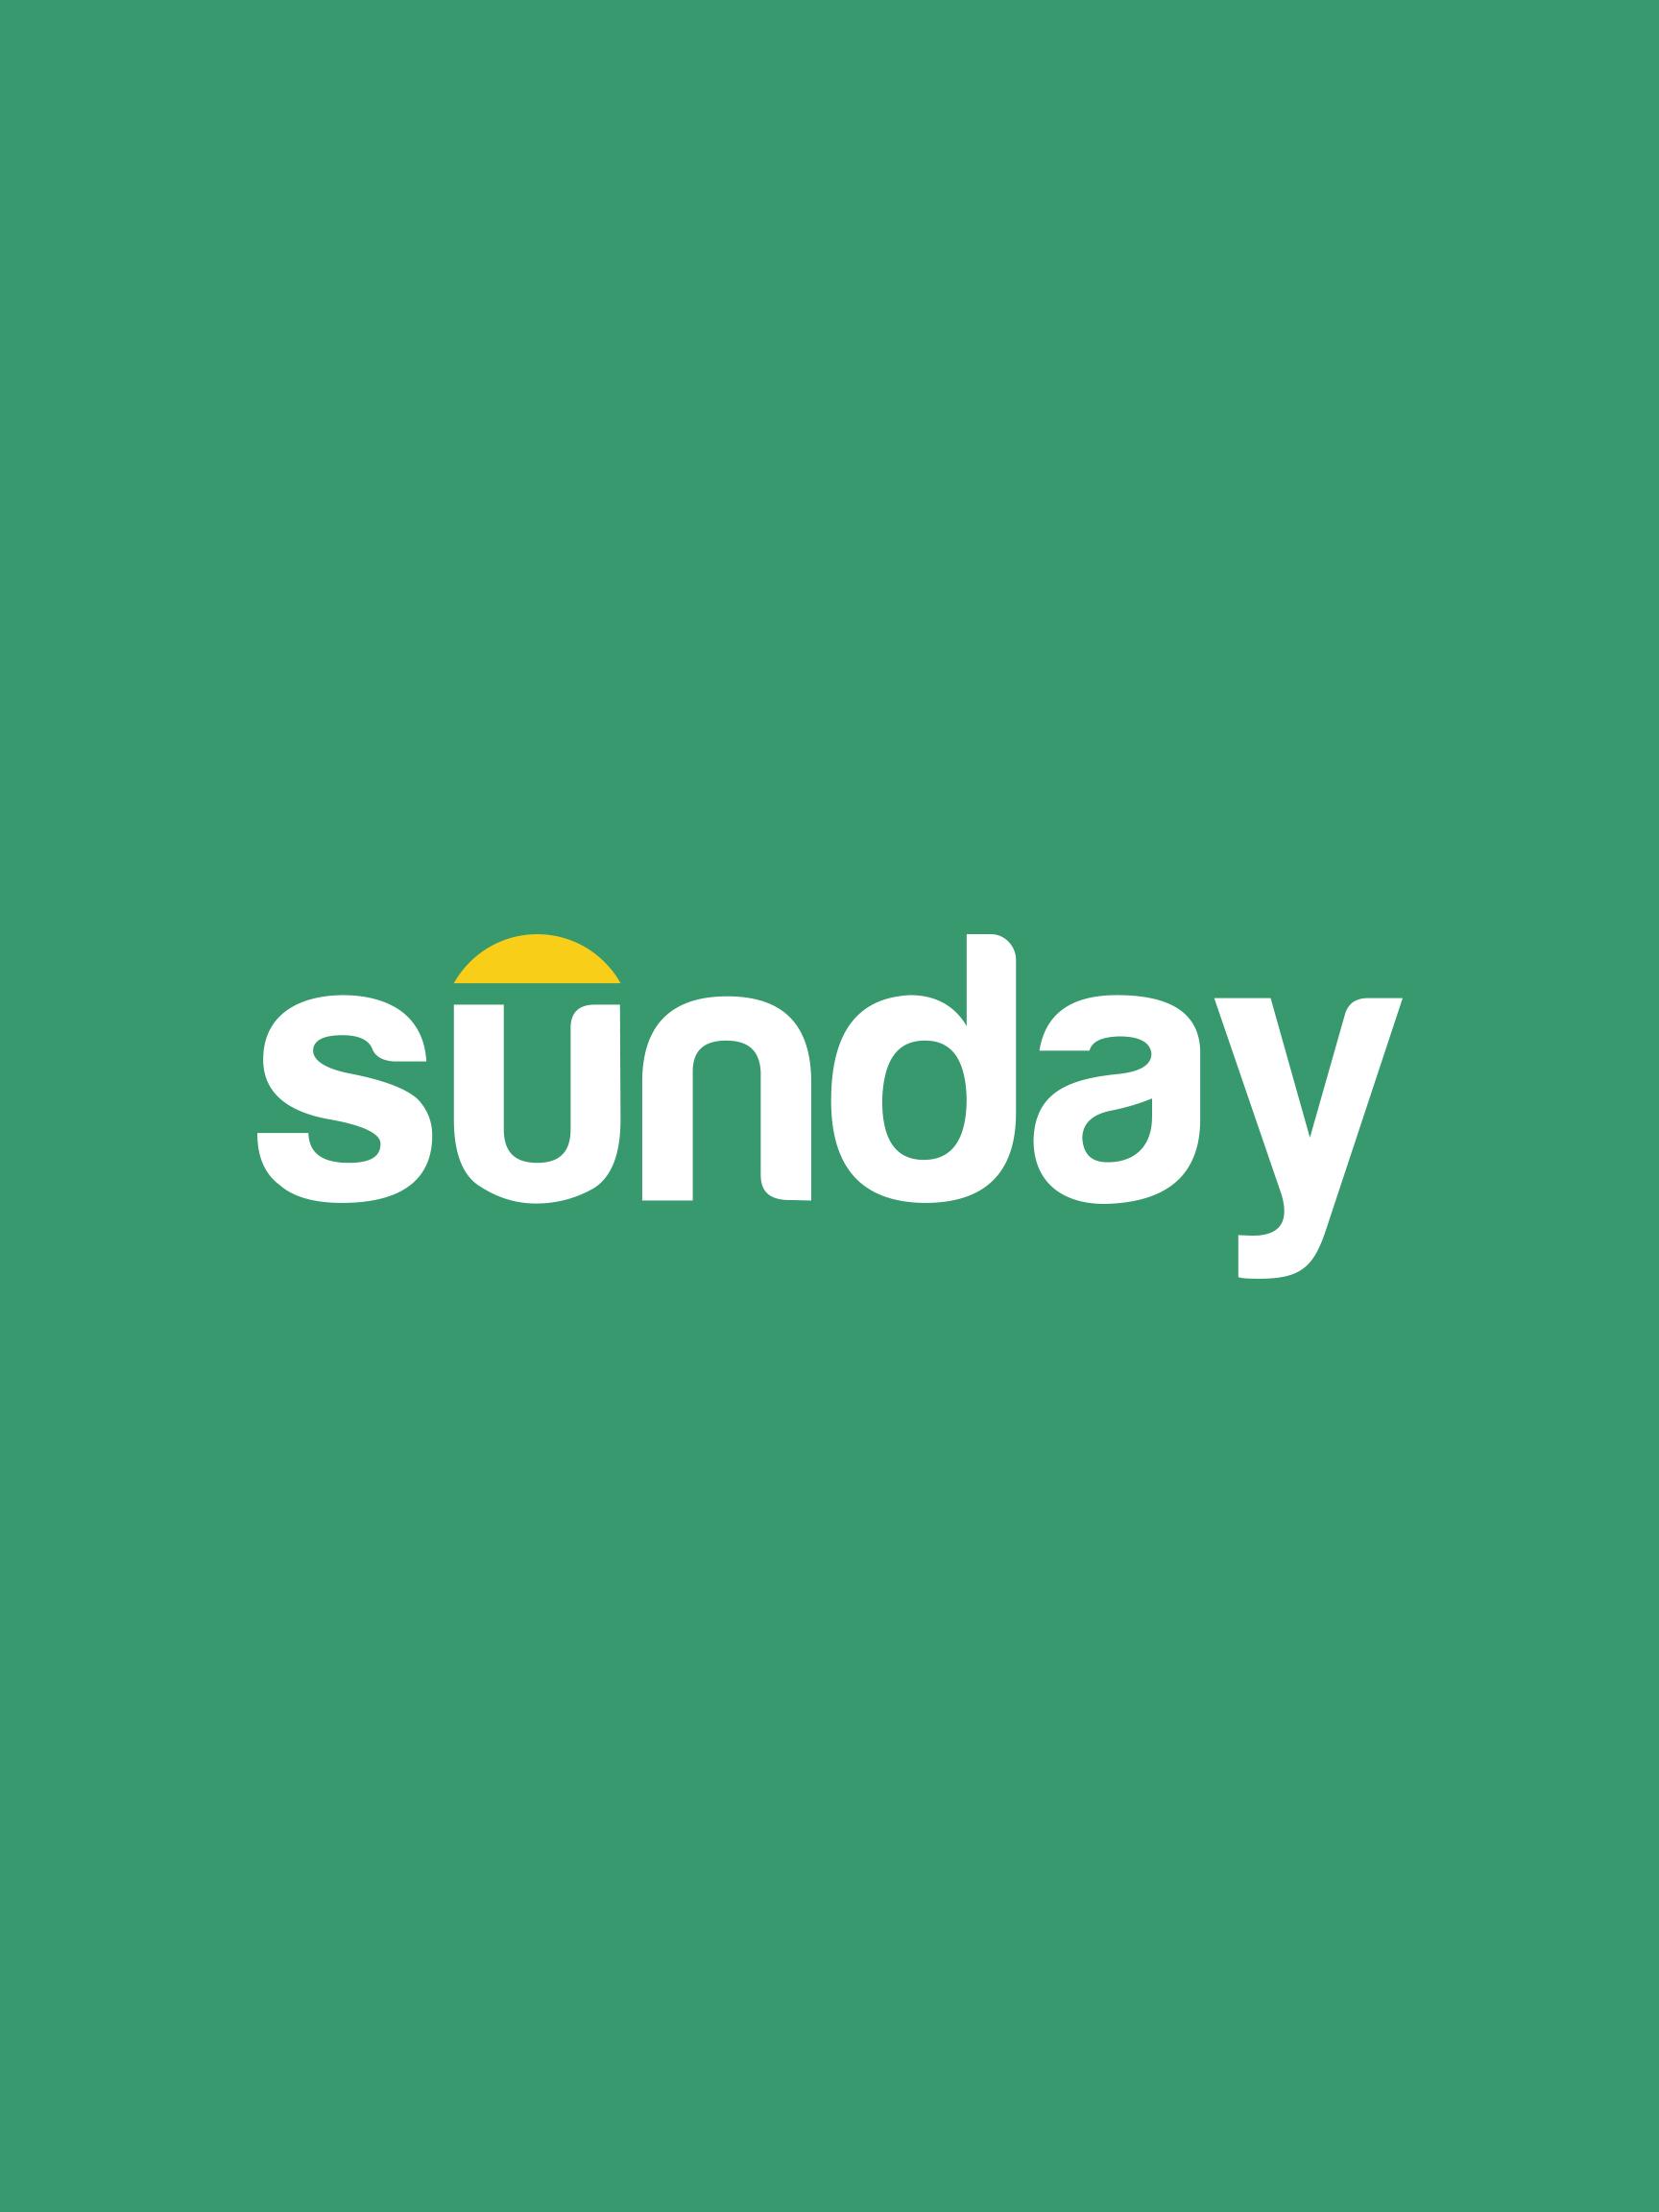 Sunday logo 2x